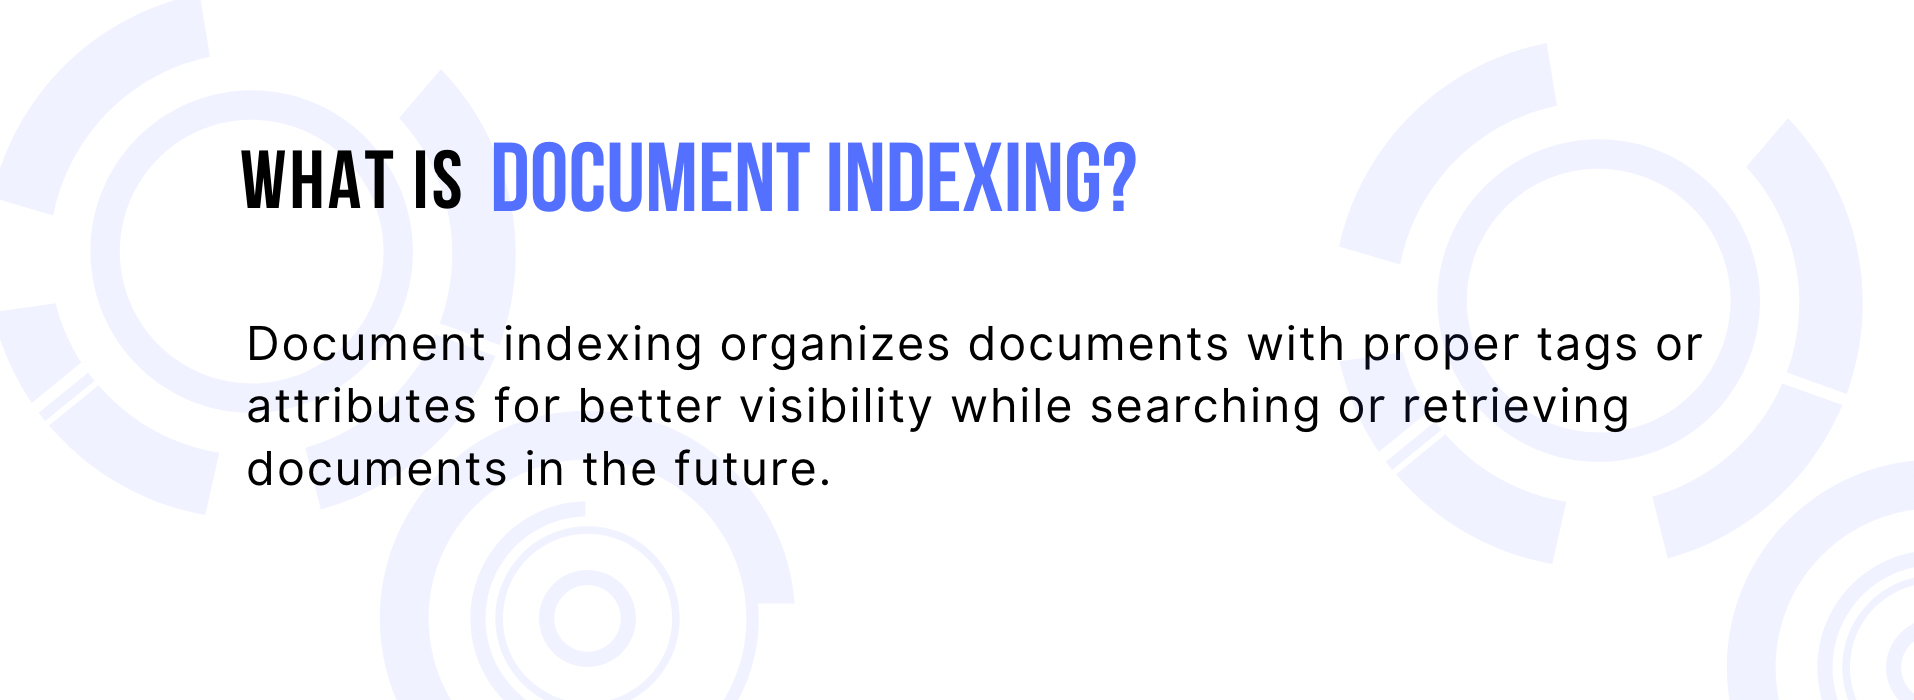 Ghidul definitiv pentru indexarea documentelor